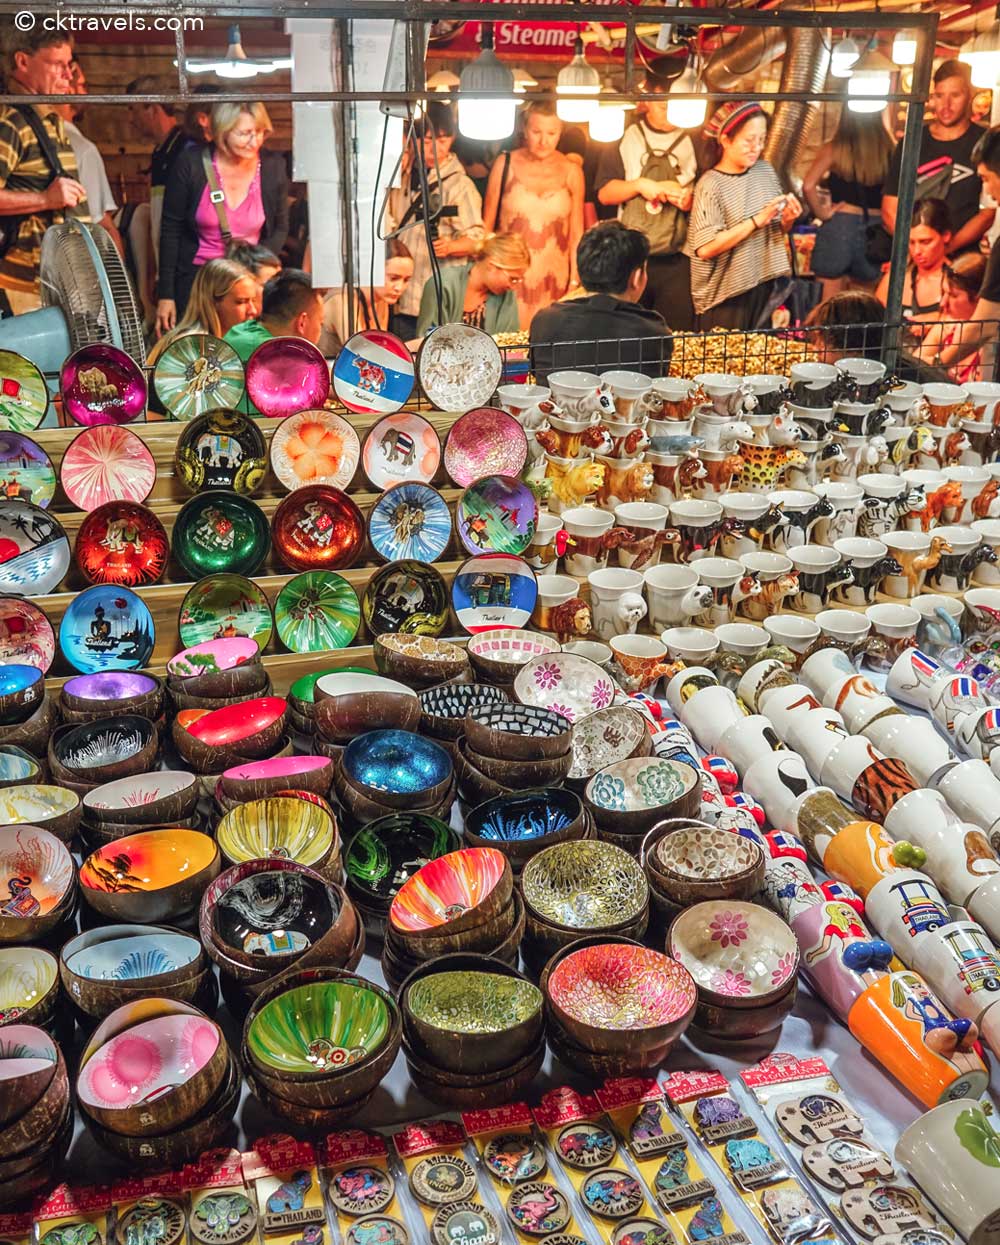 coconut bowls at Chiang Mai Saturday Night Walking Market (Wua Lai)